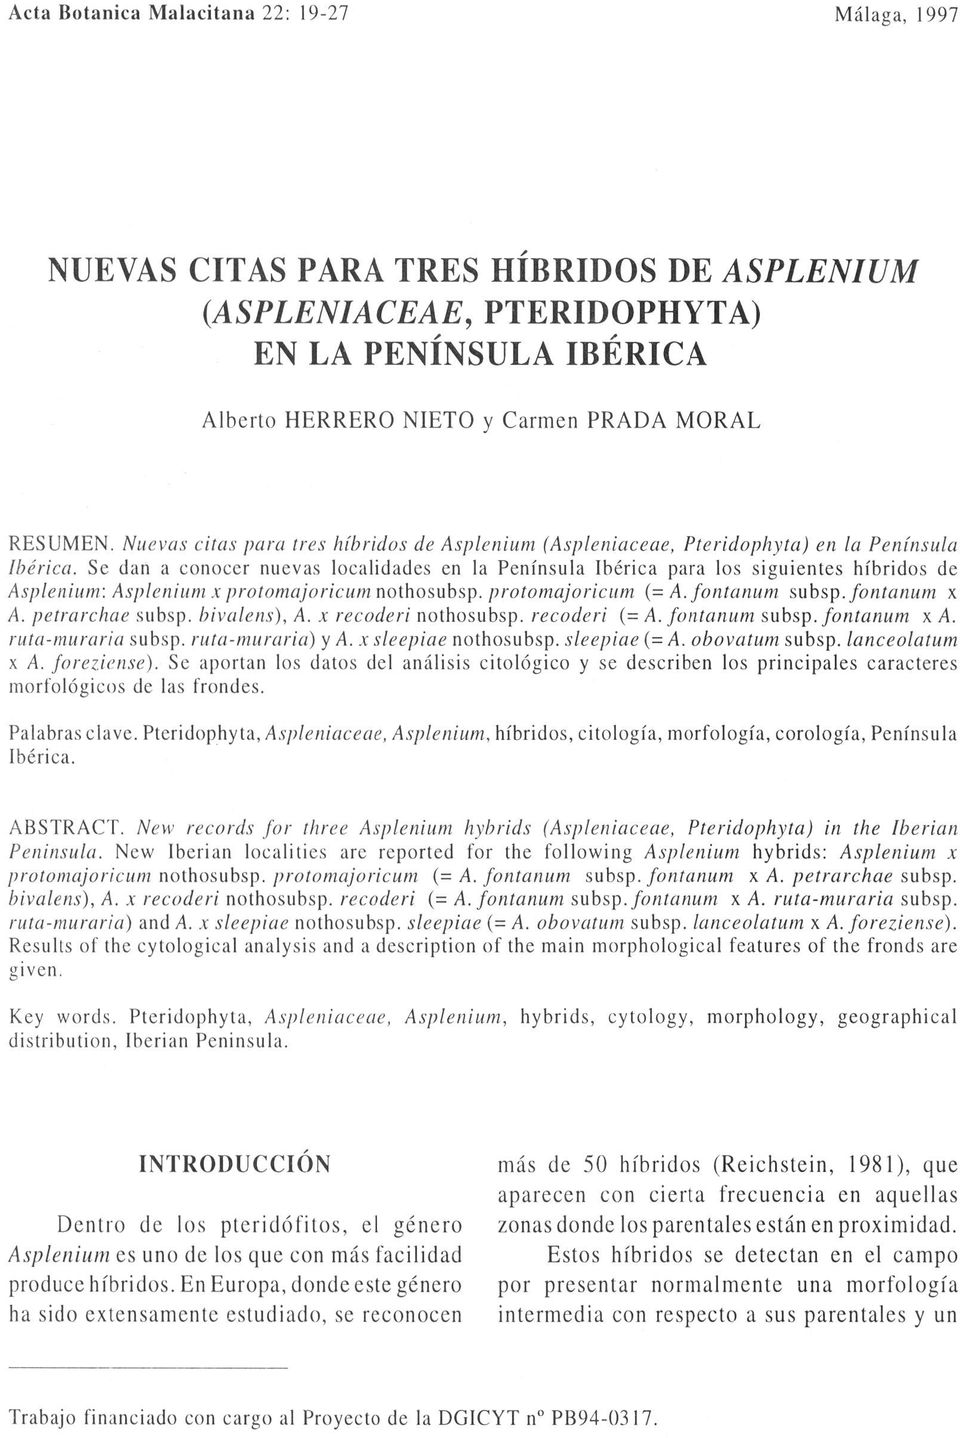 Sc dan a conocer nuevas localidades en la Península Ibérica para los siguientes híbridos de Asplenium: Asplenium x protomajoricum nothosubsp. protomajoricum (= A. fontanum subsp.fontanum x A.